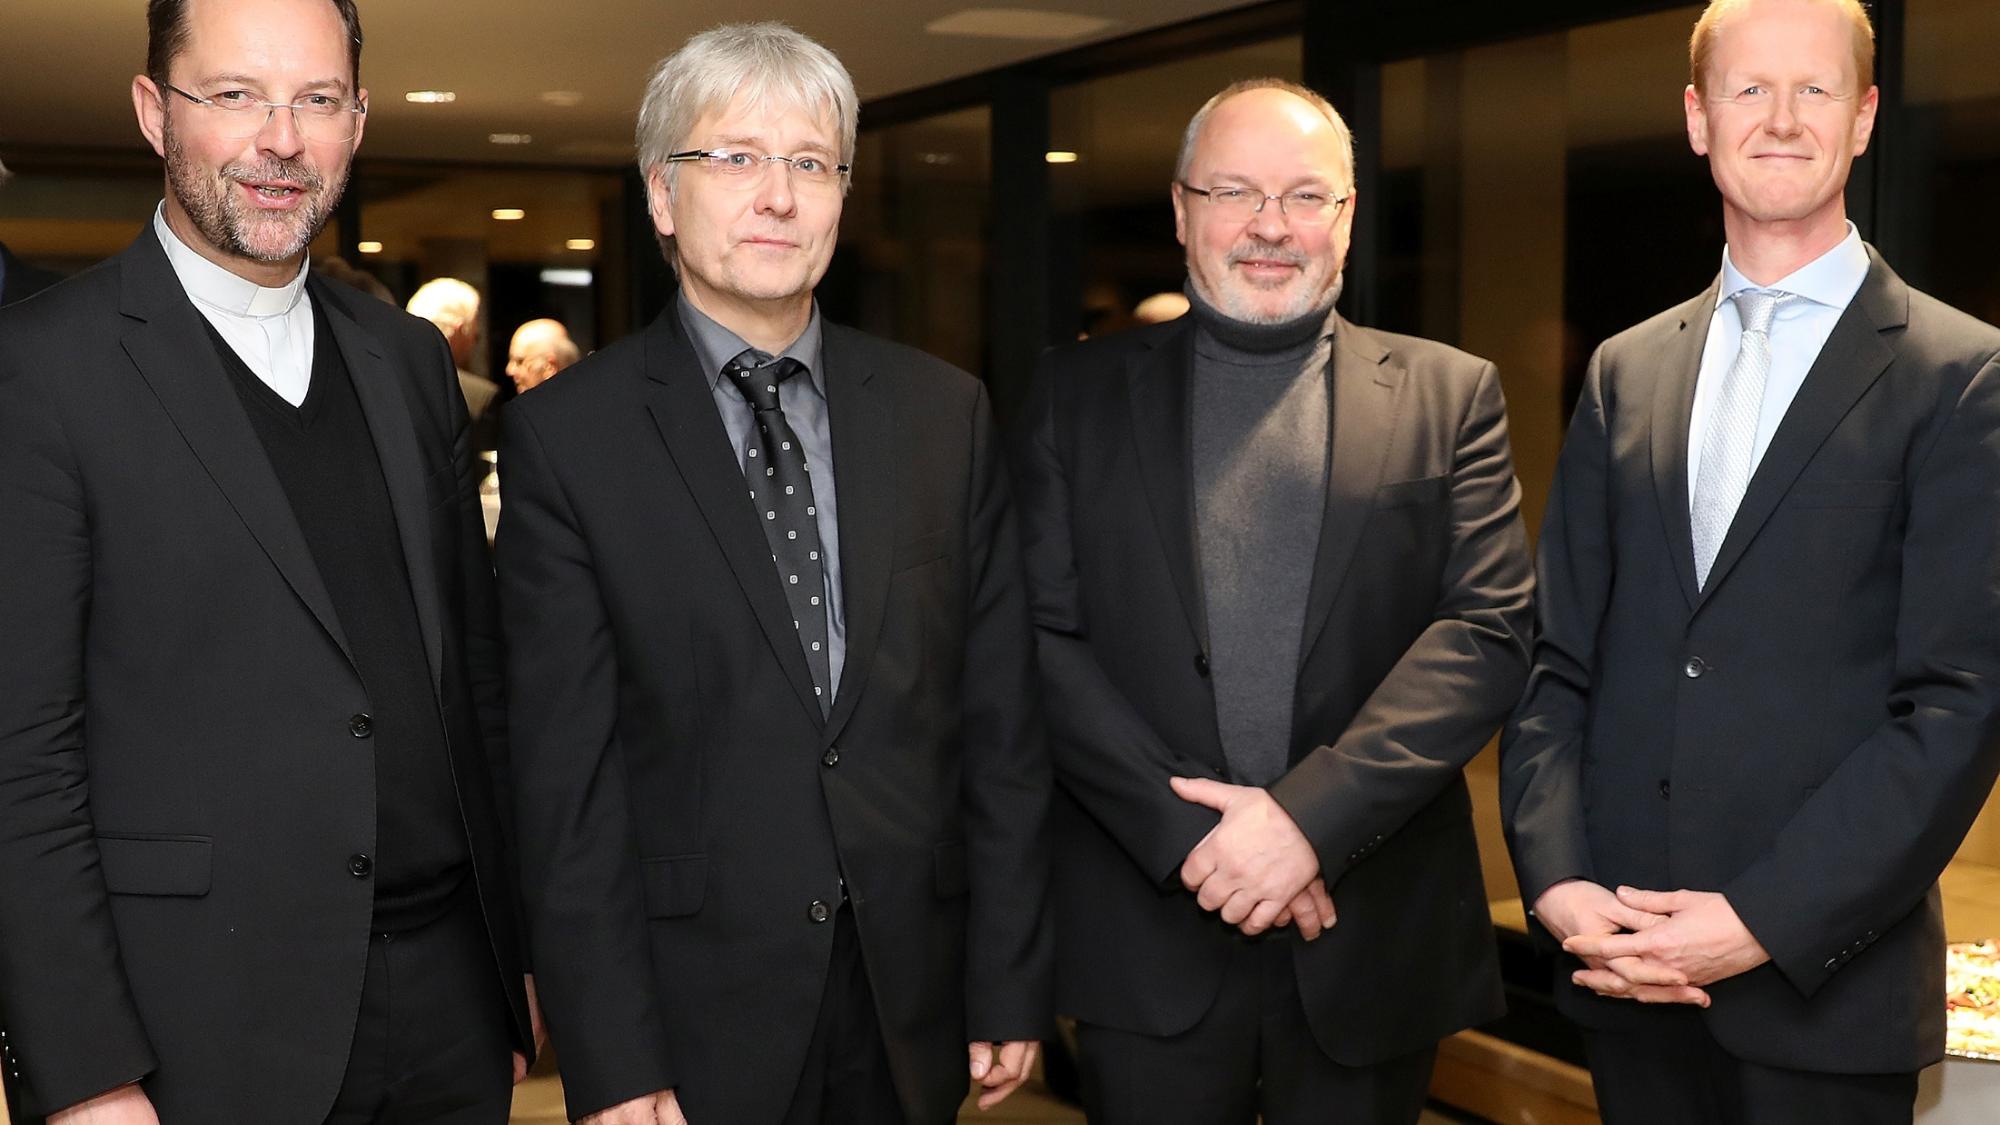 Professor Michael Hoppe (2.v.l.) ist neuer Diözesankirchenmusikdirektor, Marco Fühner (r.) und Andreas Cavelius (2.v.r.) sind Kirchenmusikdirektoren. Generalvikar Dr. Andreas Frick (l.) verlieh ihnen diese Titel.